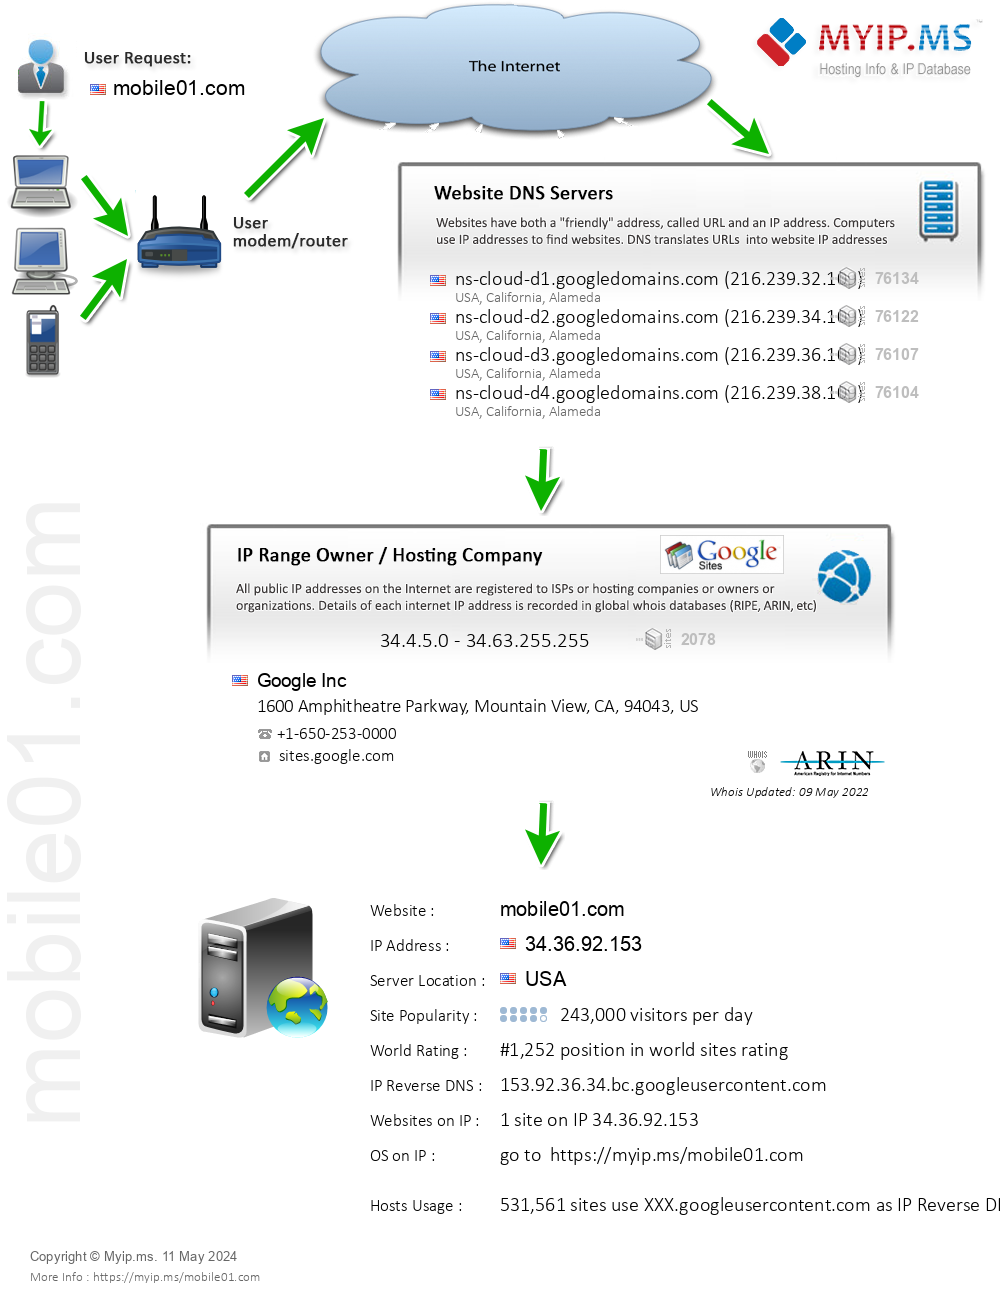 Mobile01.com - Website Hosting Visual IP Diagram